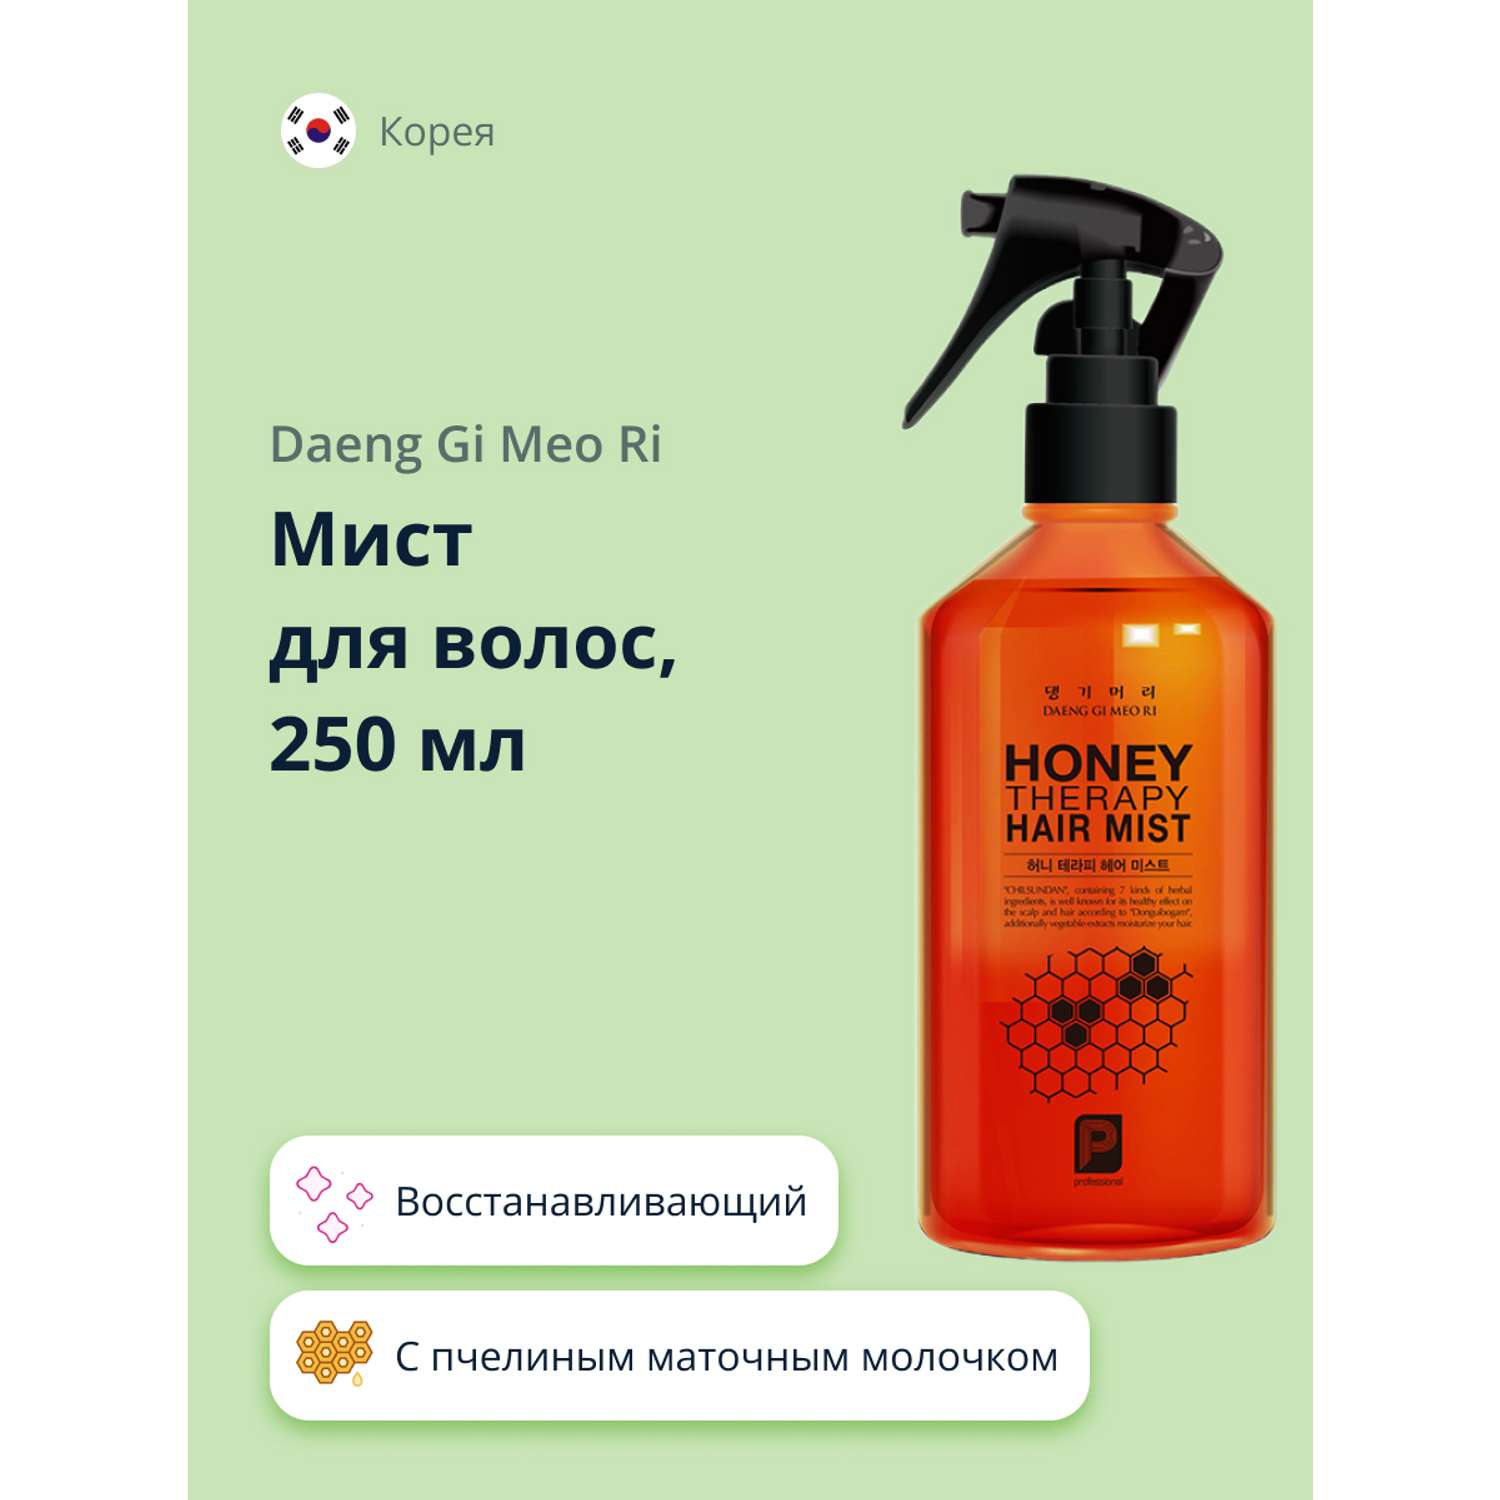 Мист для волос Daeng Gi Meo Ri Honey c пчелиным маточным молочком 250 мл - фото 1